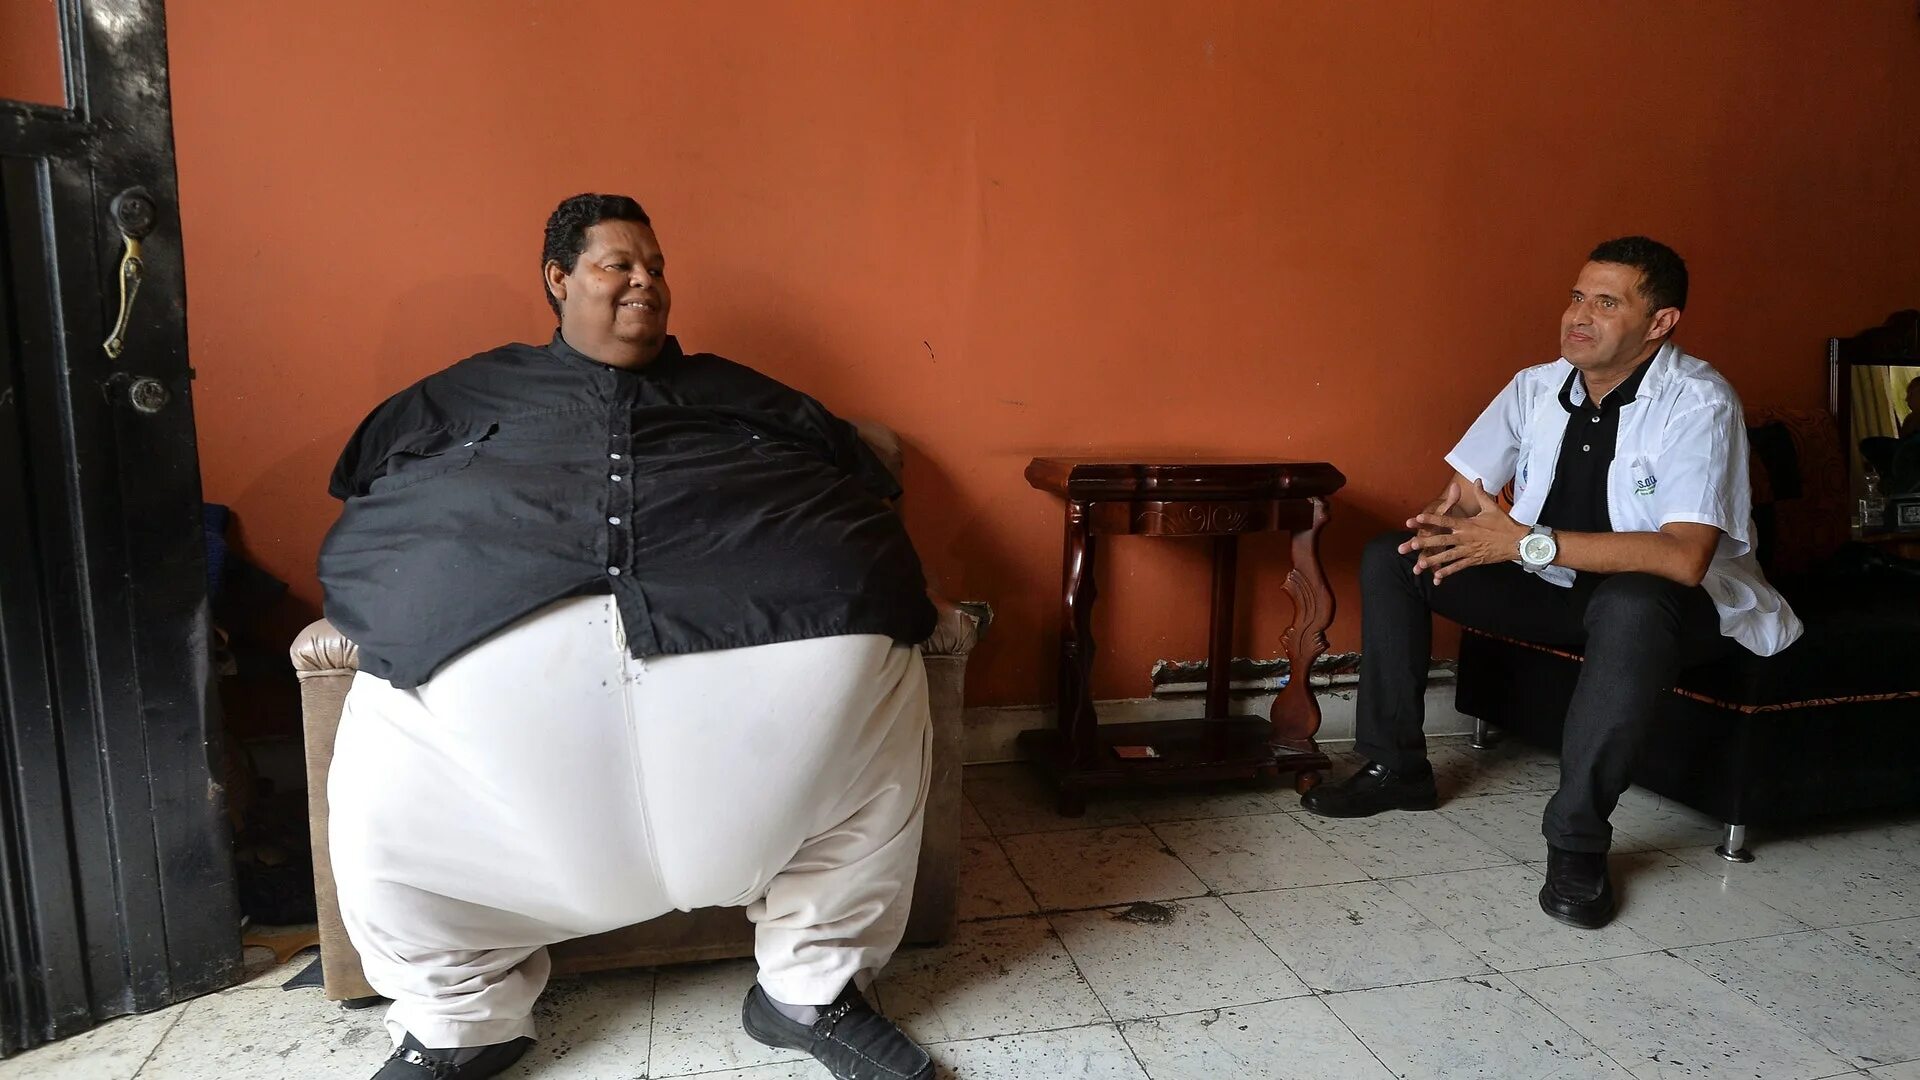 Хуан Педро Франко 600 кг. Мужчина с большим весом